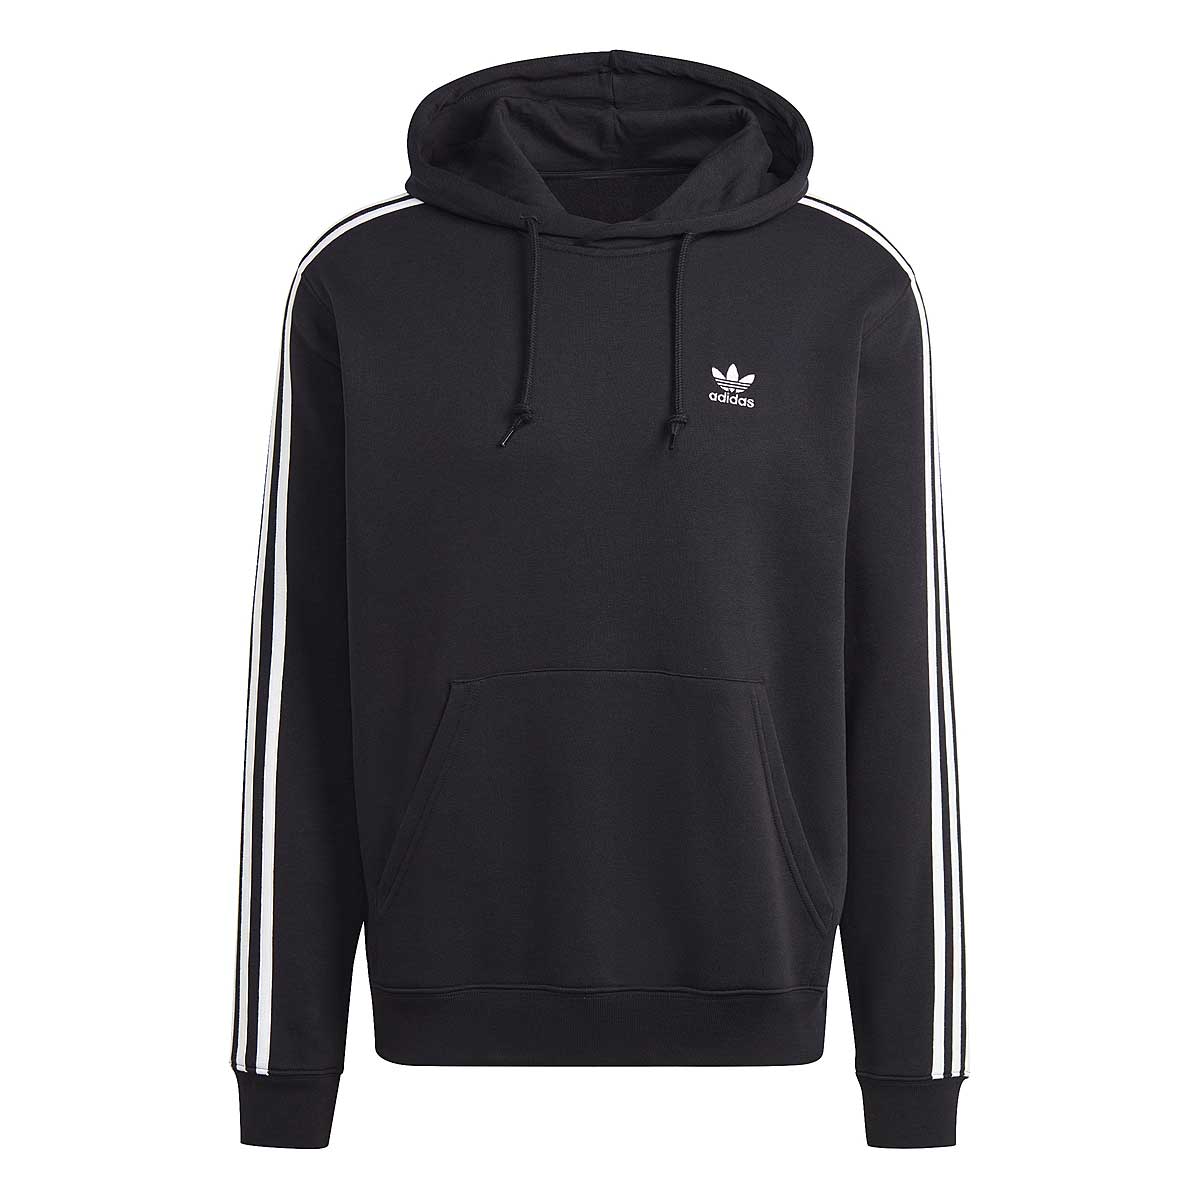 Adidas 3-stripes Hoody, Schwarz/schwarz L